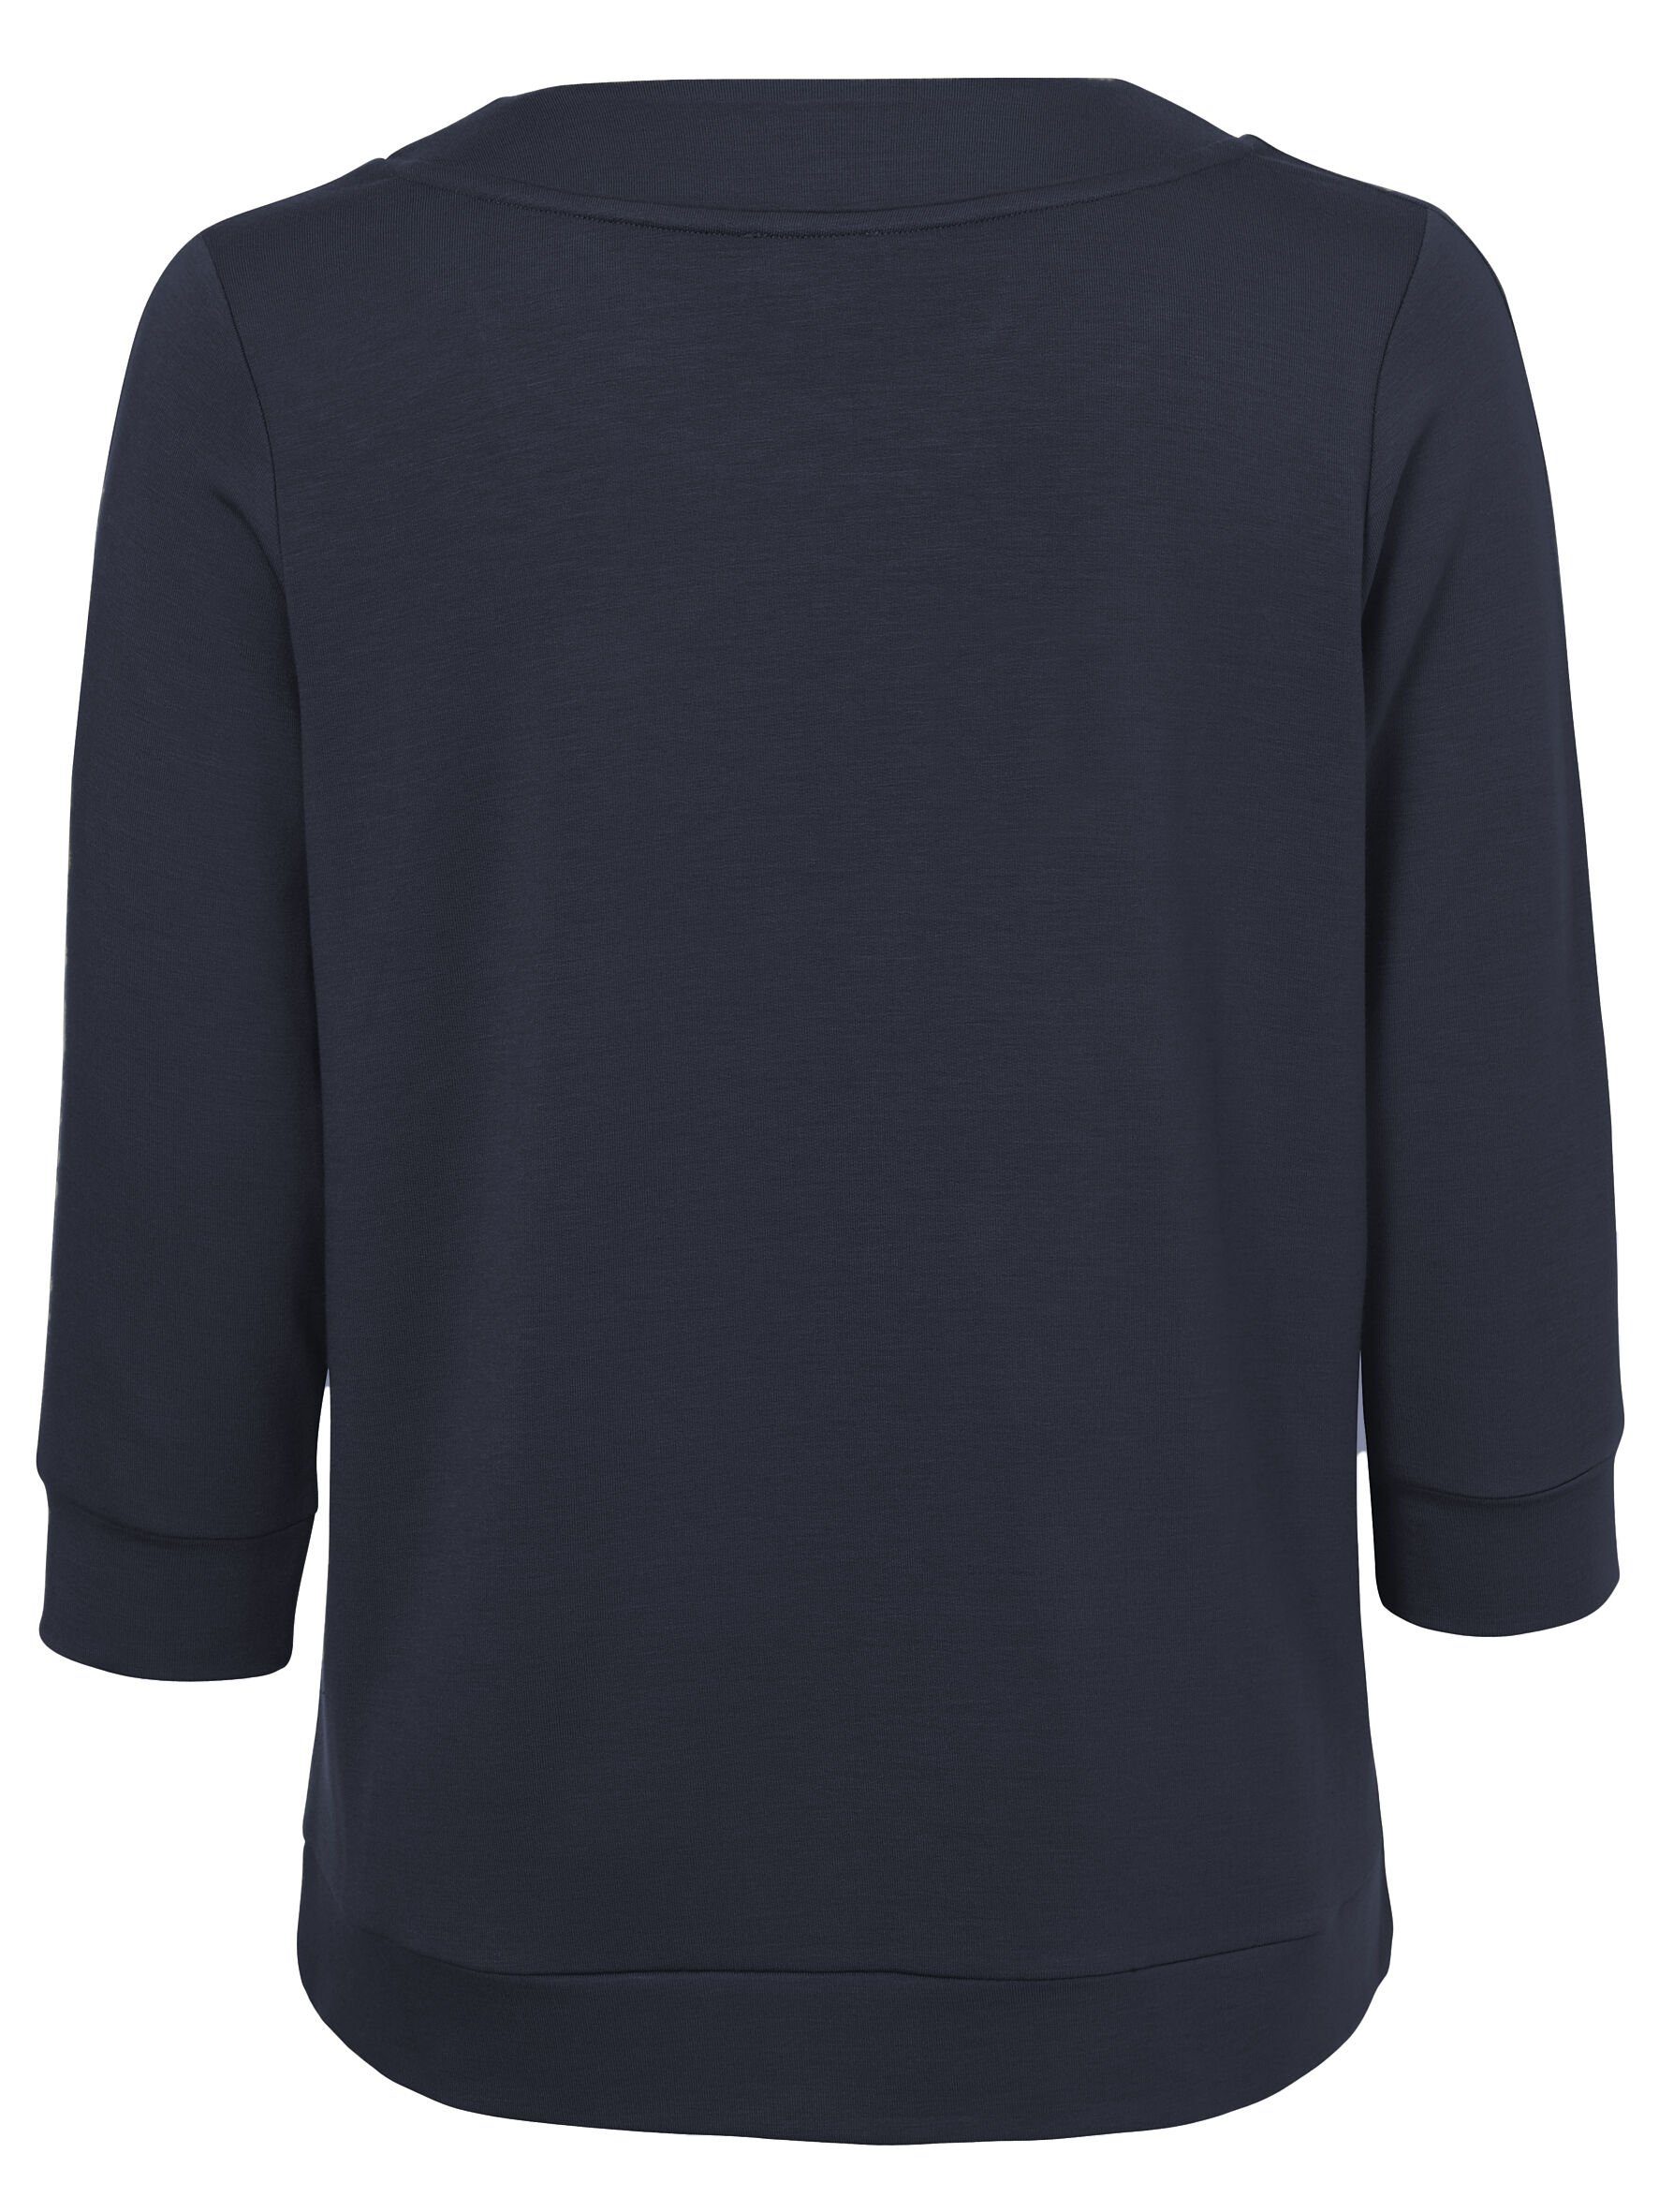 VIA APPIA Sweatshirt schwarz Sweatshirt mit Glitzerdetails DUE Dezentes V-Ausschnitt mit